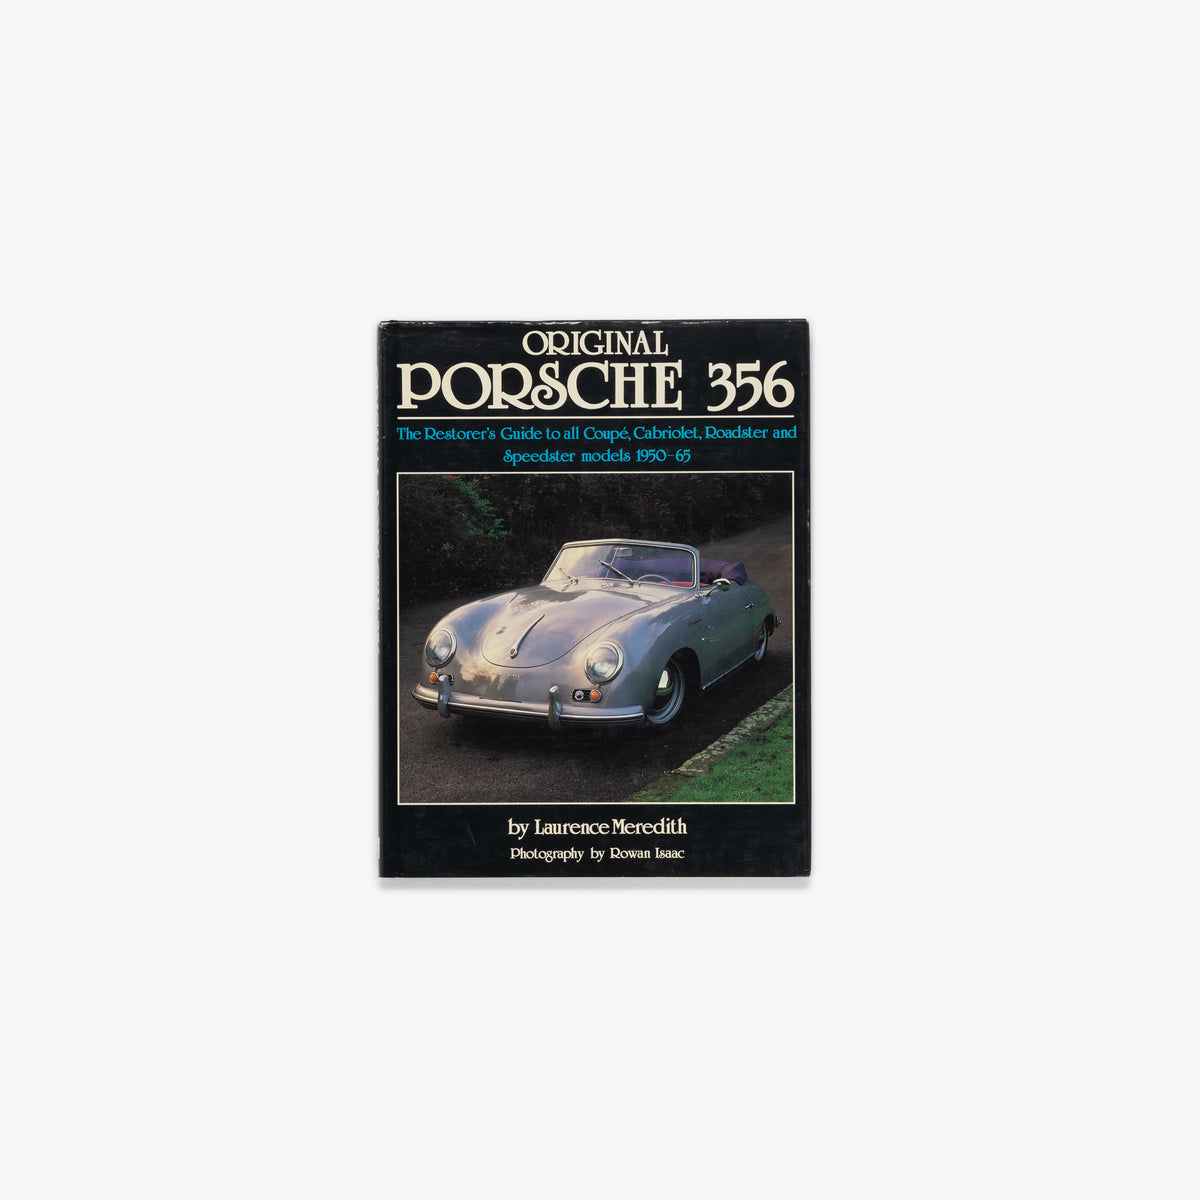 The Aimé Leon Dore Porsche 356